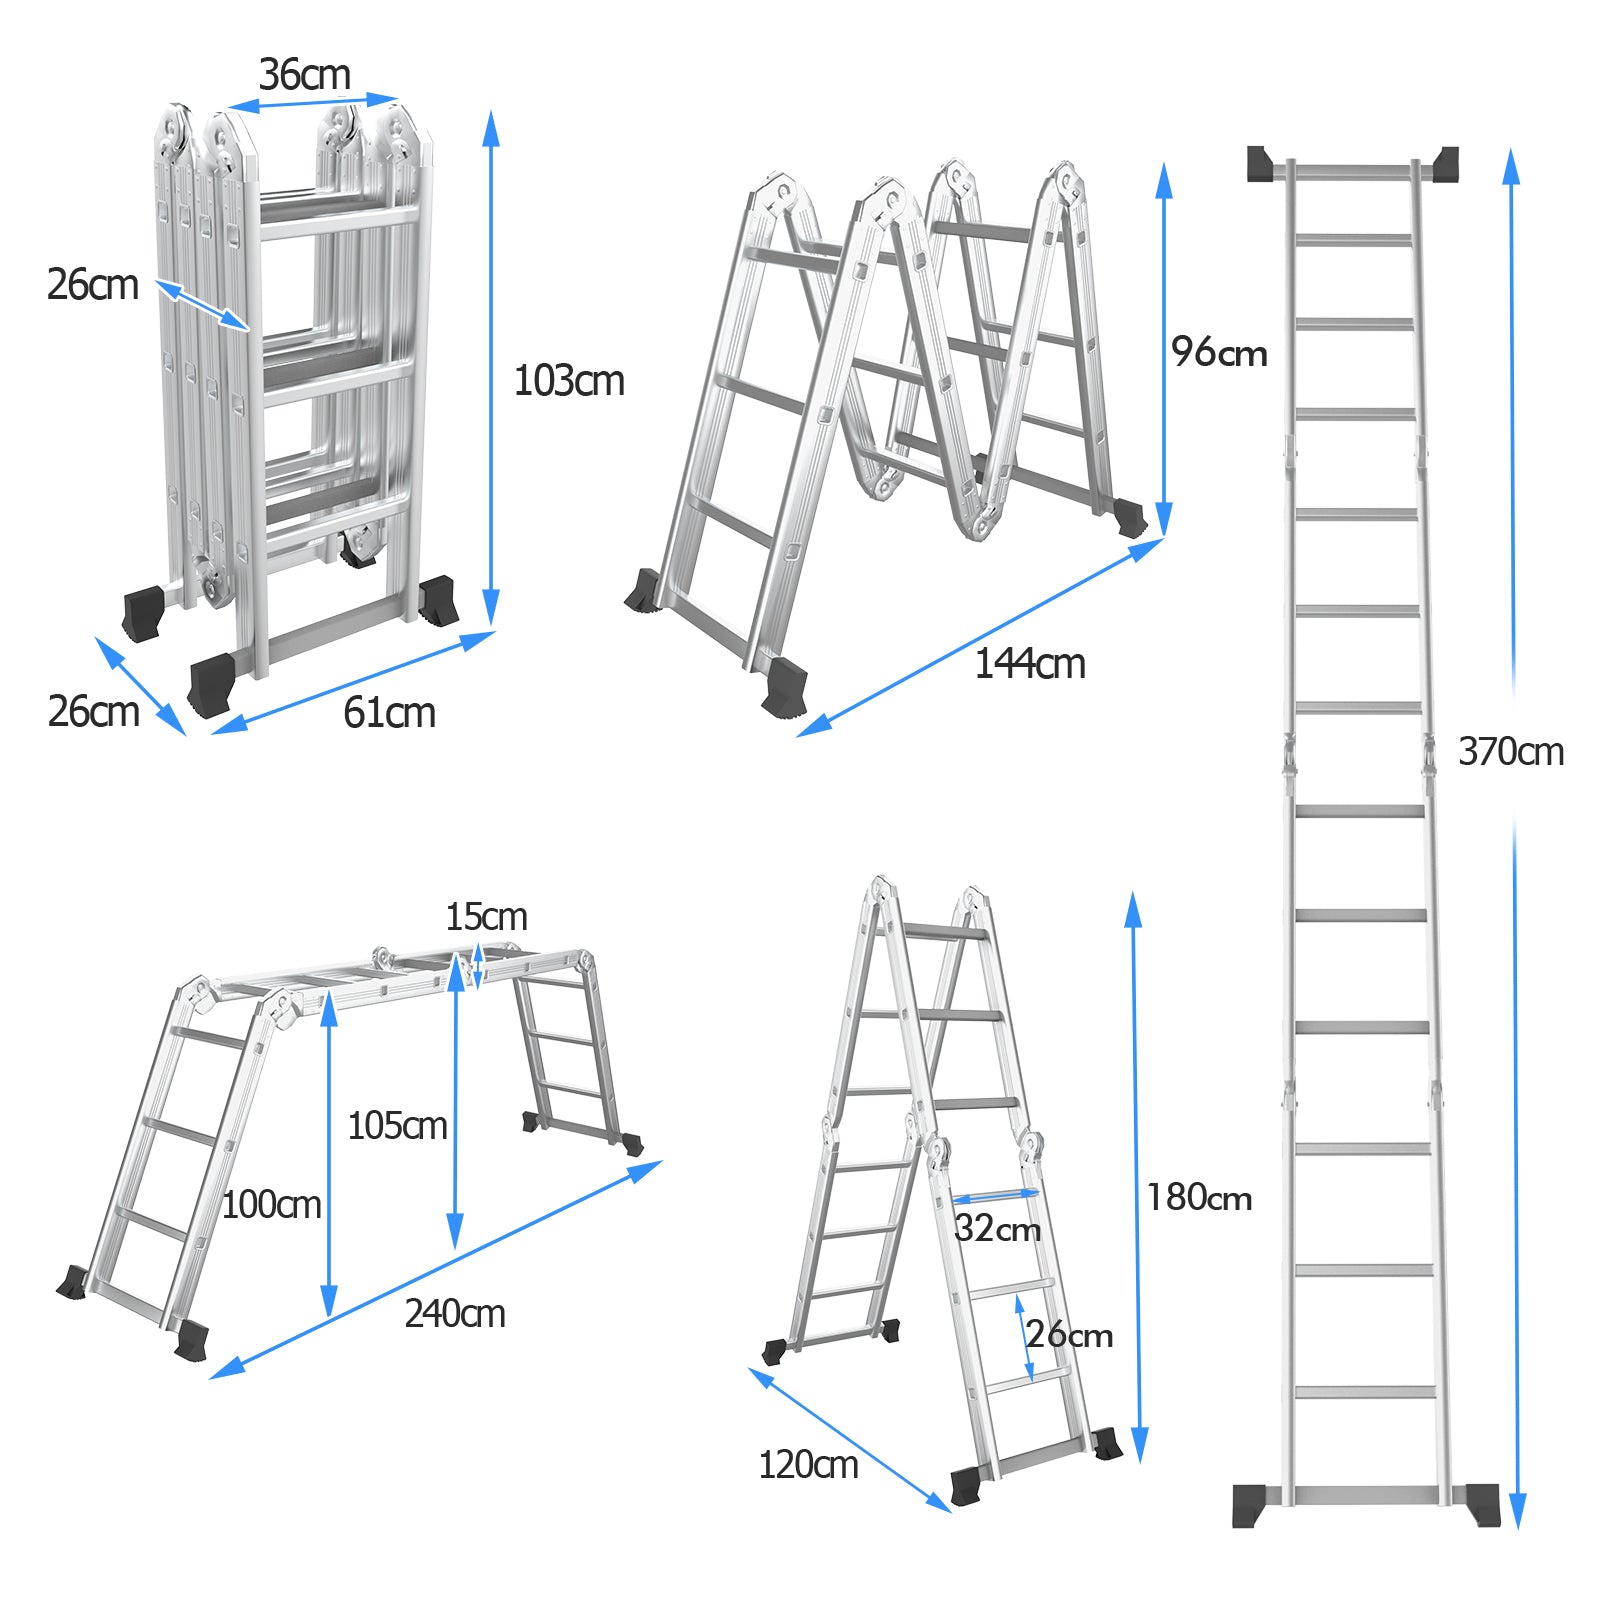 7-in-1 Folding Multi-Purpose Extension Aluminum Ladder